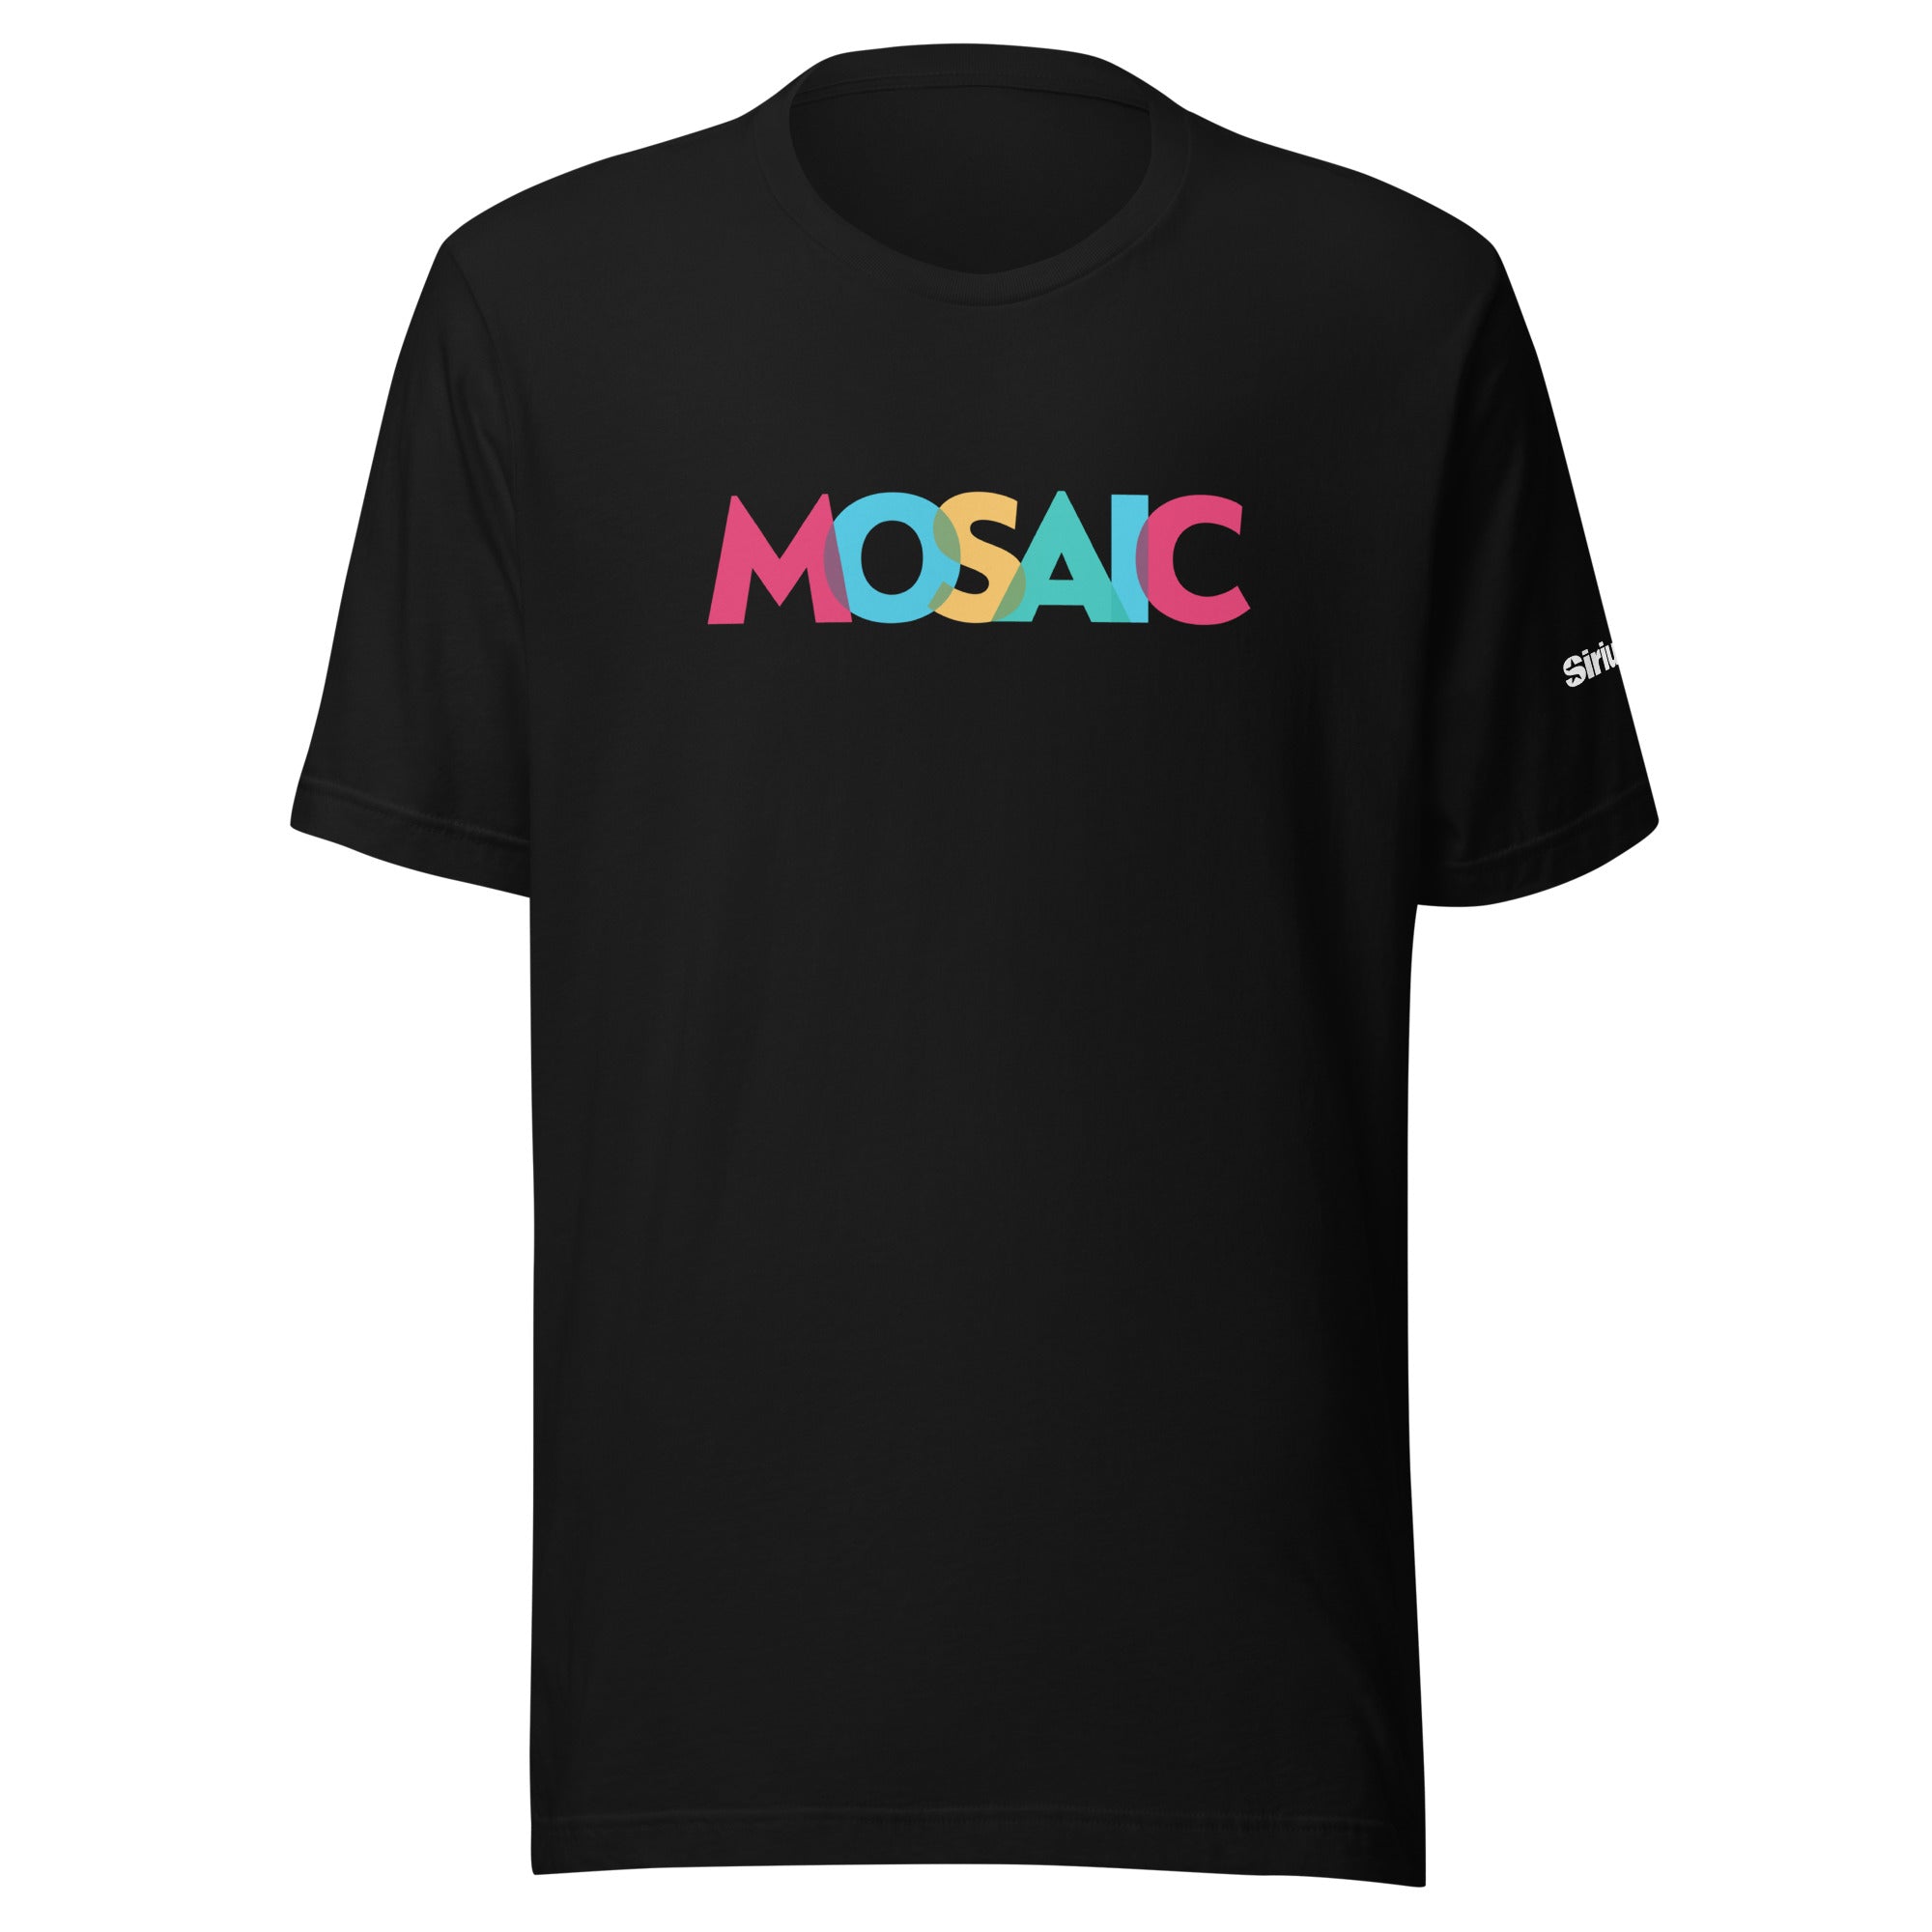 Mosaic: T-shirt (Black)